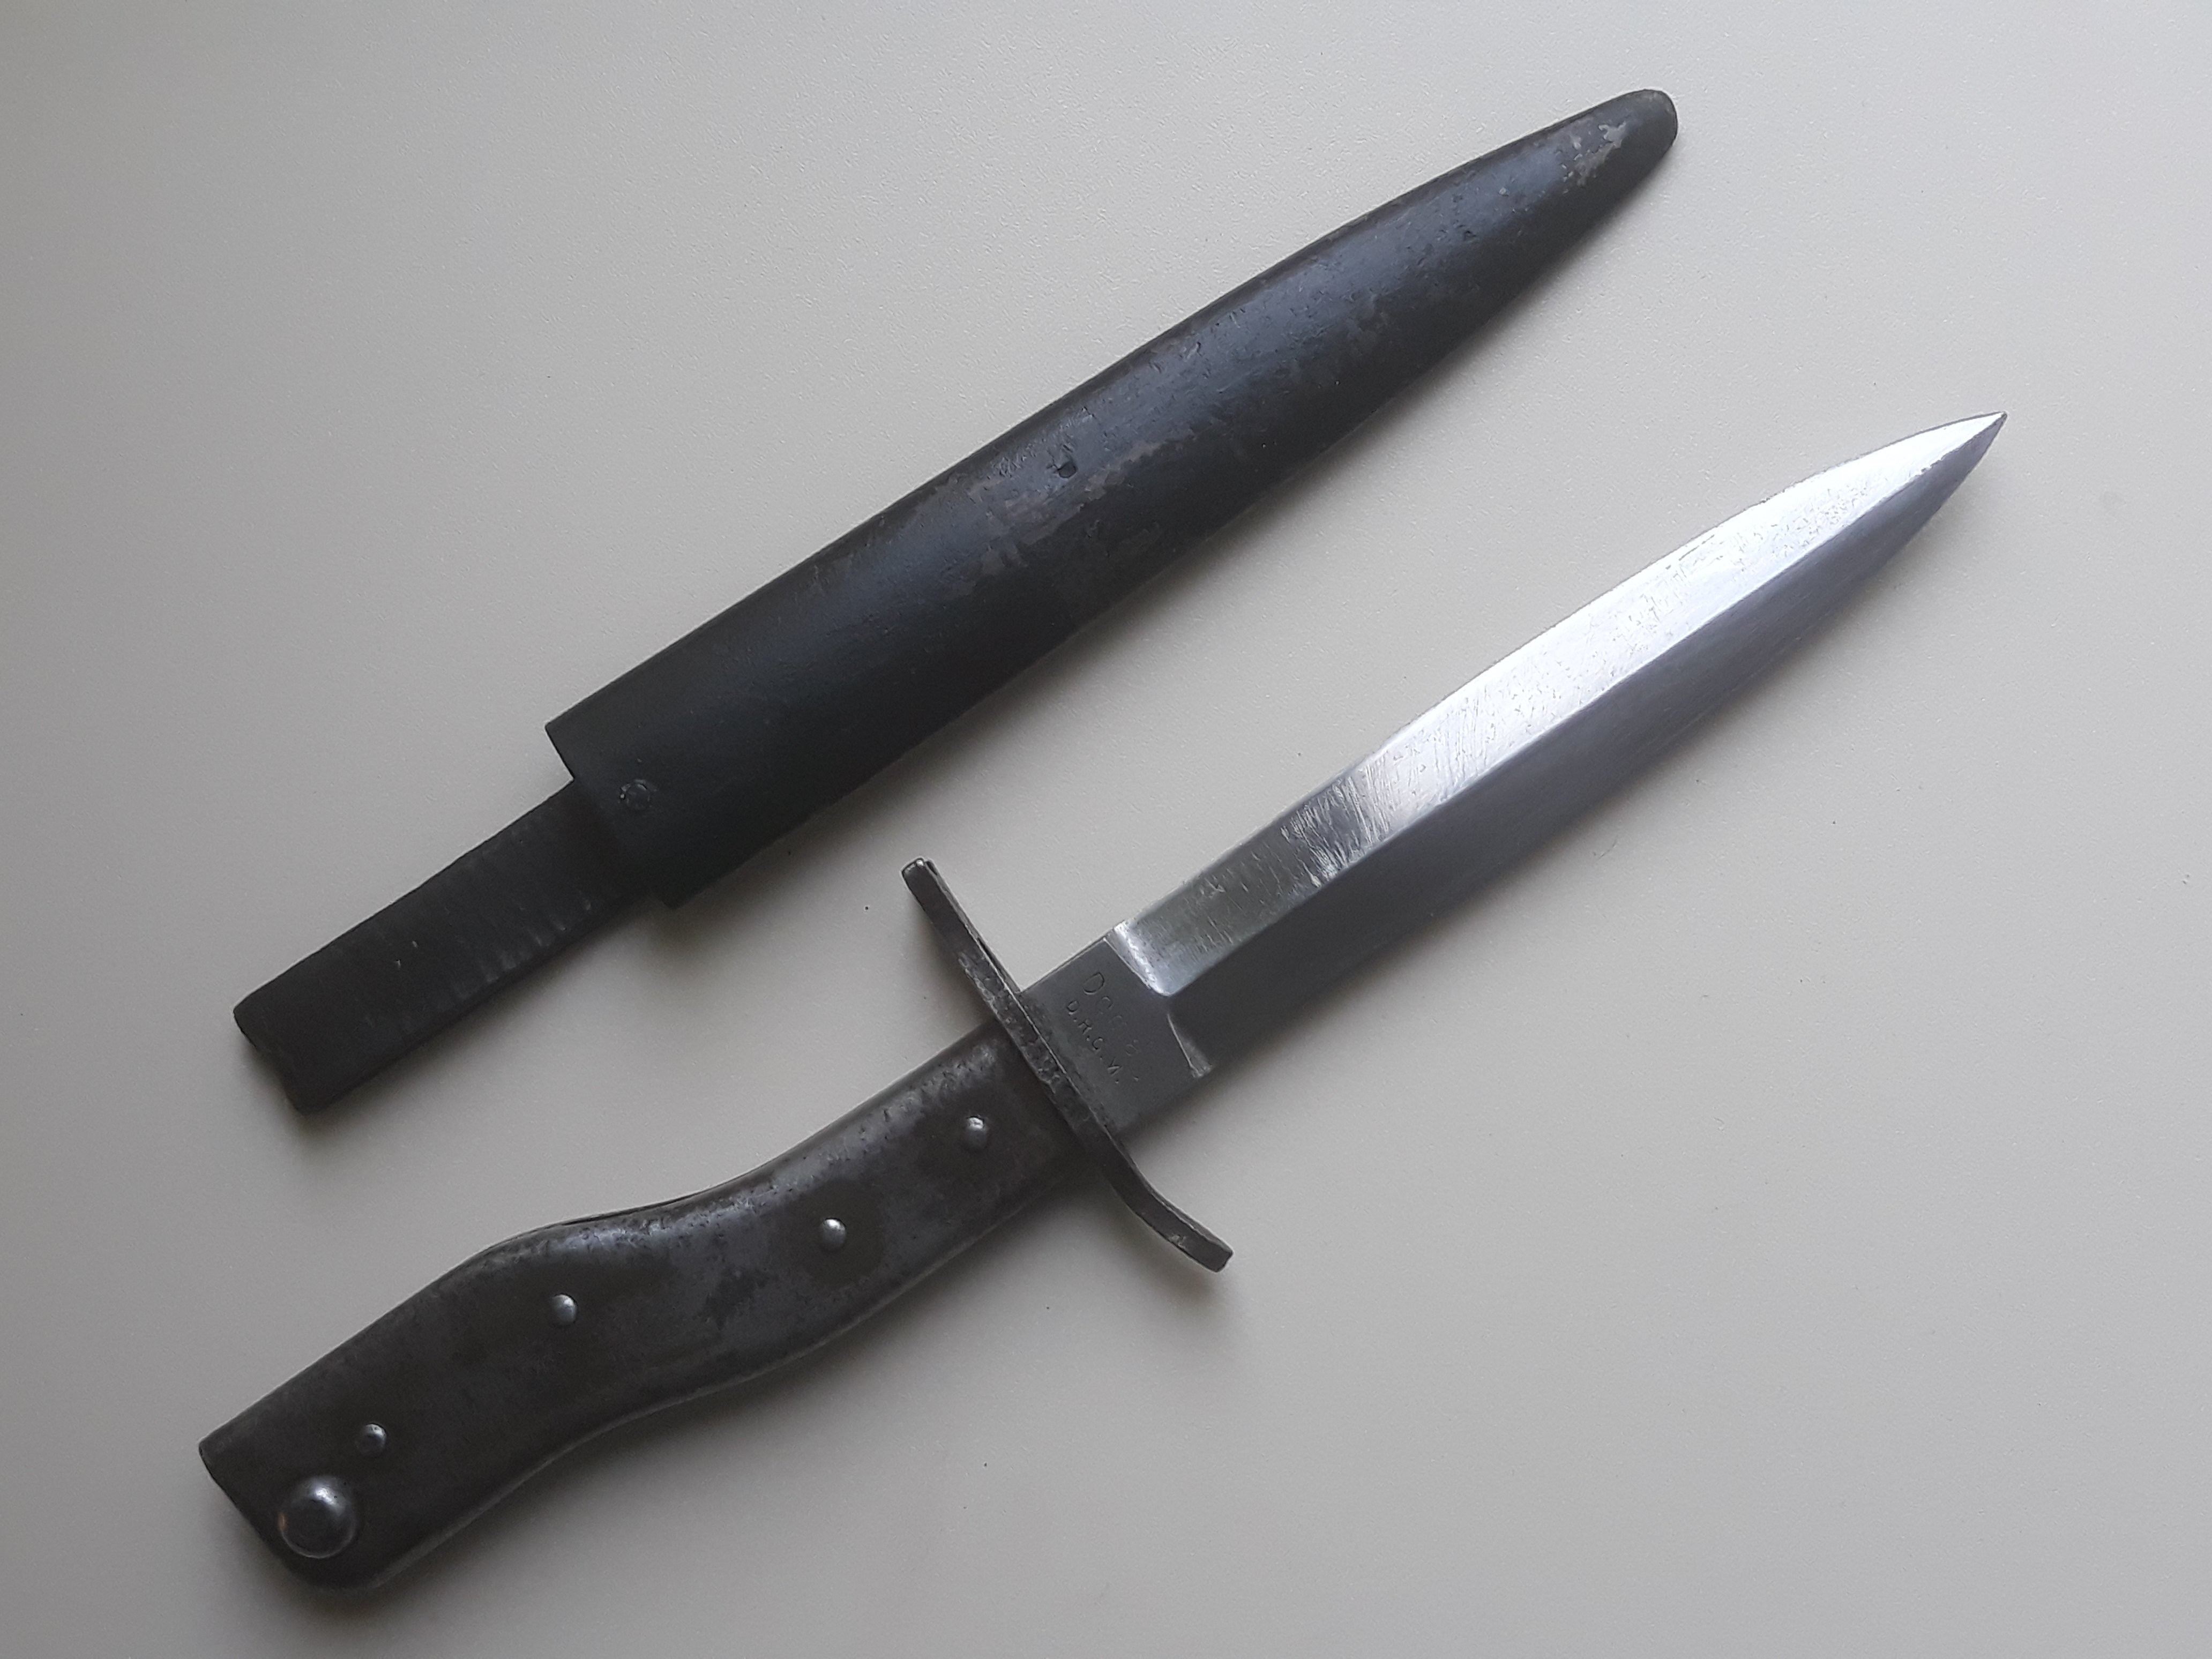 Ножи первой мировой войны фото